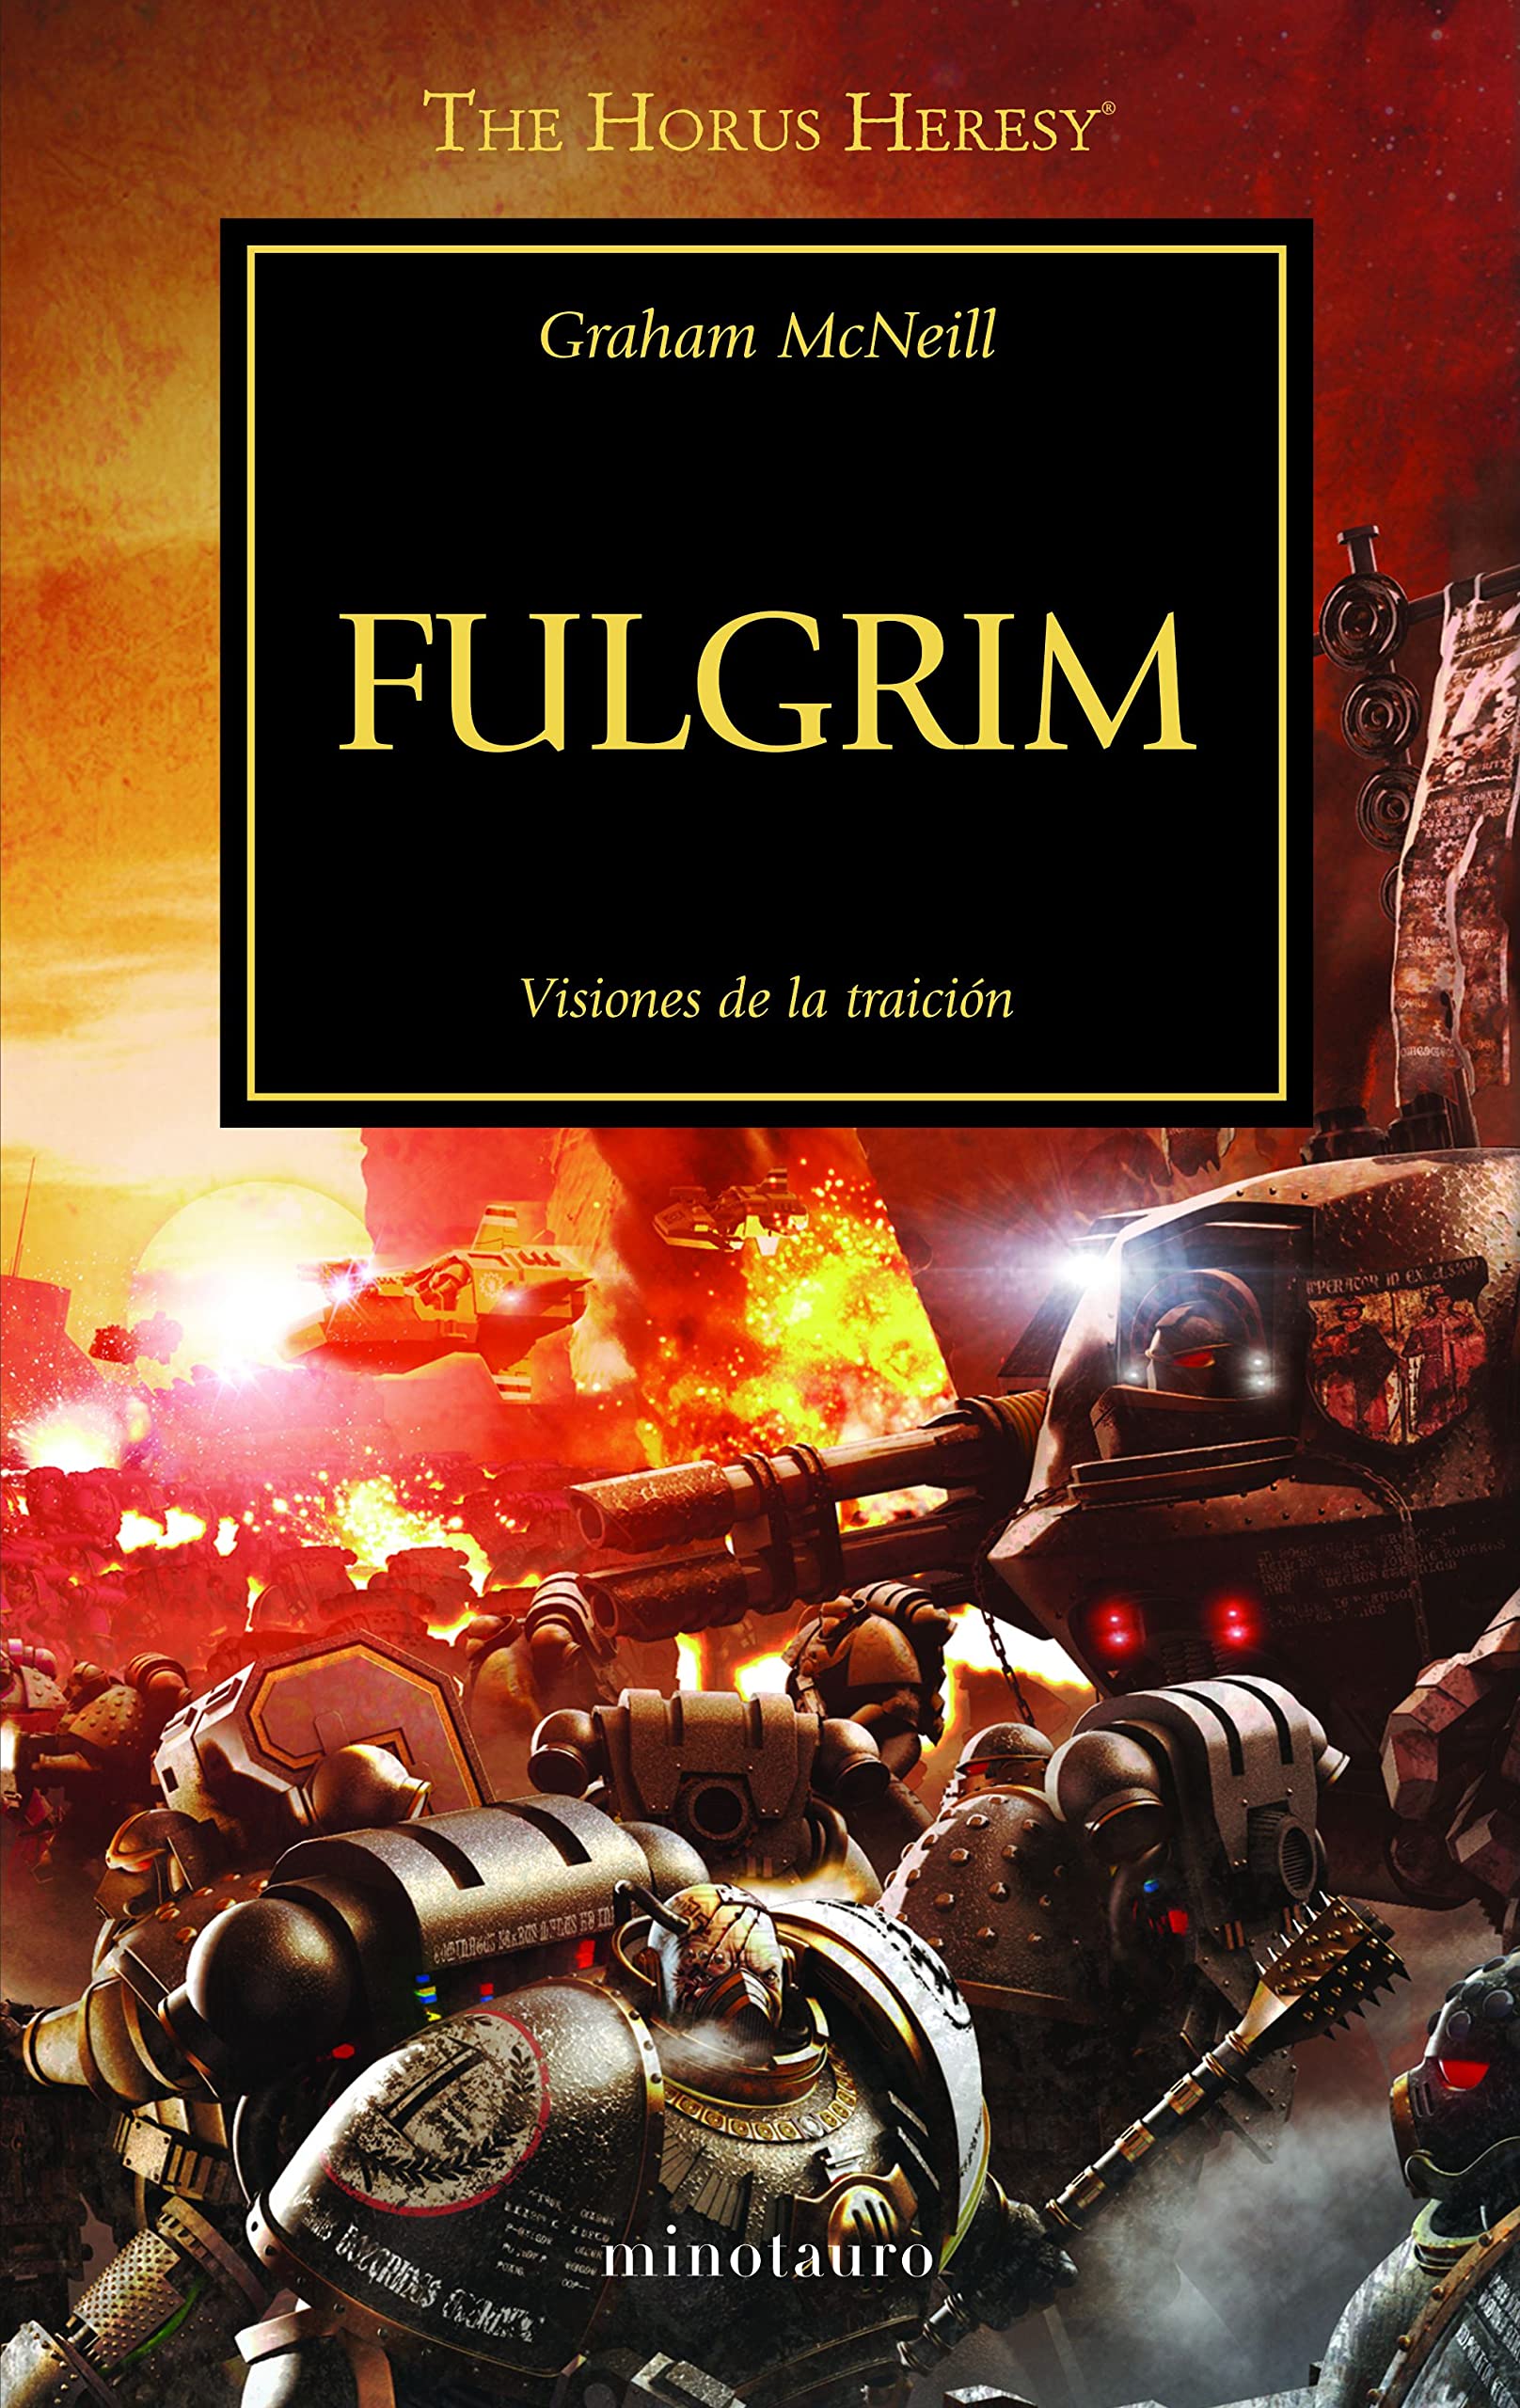 Libro: Fulgrim, Visiones de la Traición - Libro 5 de 54: Warhammer The Horus Heresy por Graham McNeill